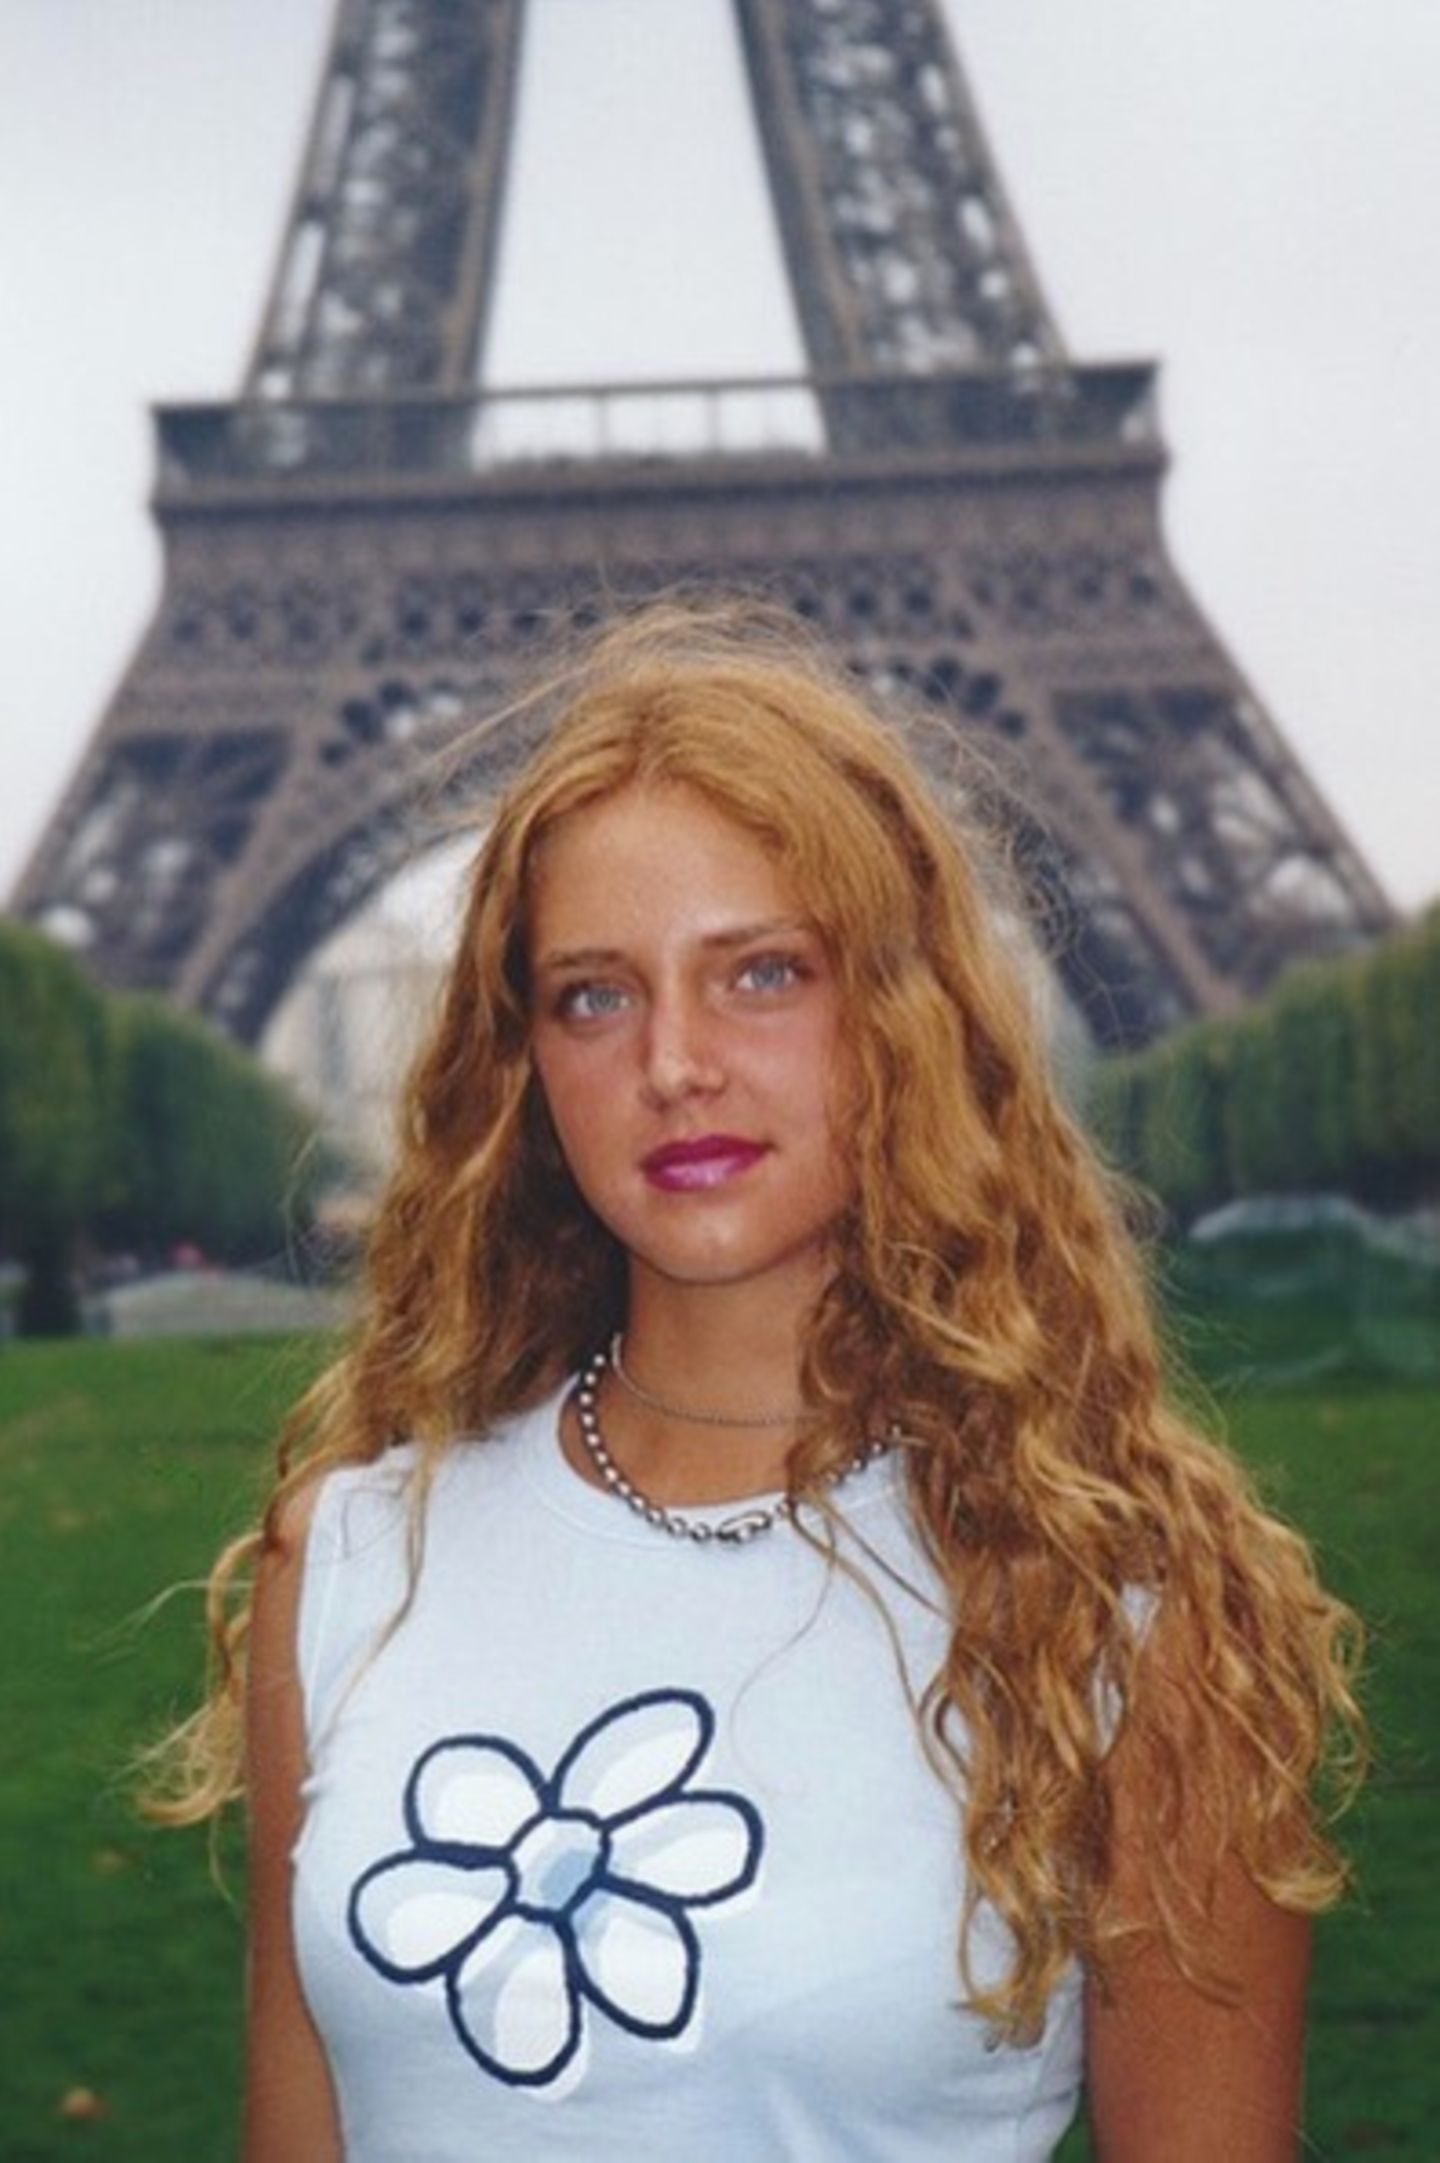 Lange bevor Chiara Ferragni die 11-Millionen-Follower-Marke auf Instagram knackt, ist sie das natürliche Mädchen von nebenan. Rote Locken, ein etwas unbeholfener Style und lediglich als Touri in Paris unterwegs - damals ist sie von ihrem heutigen Luxus-Lifestyle weit entfernt.